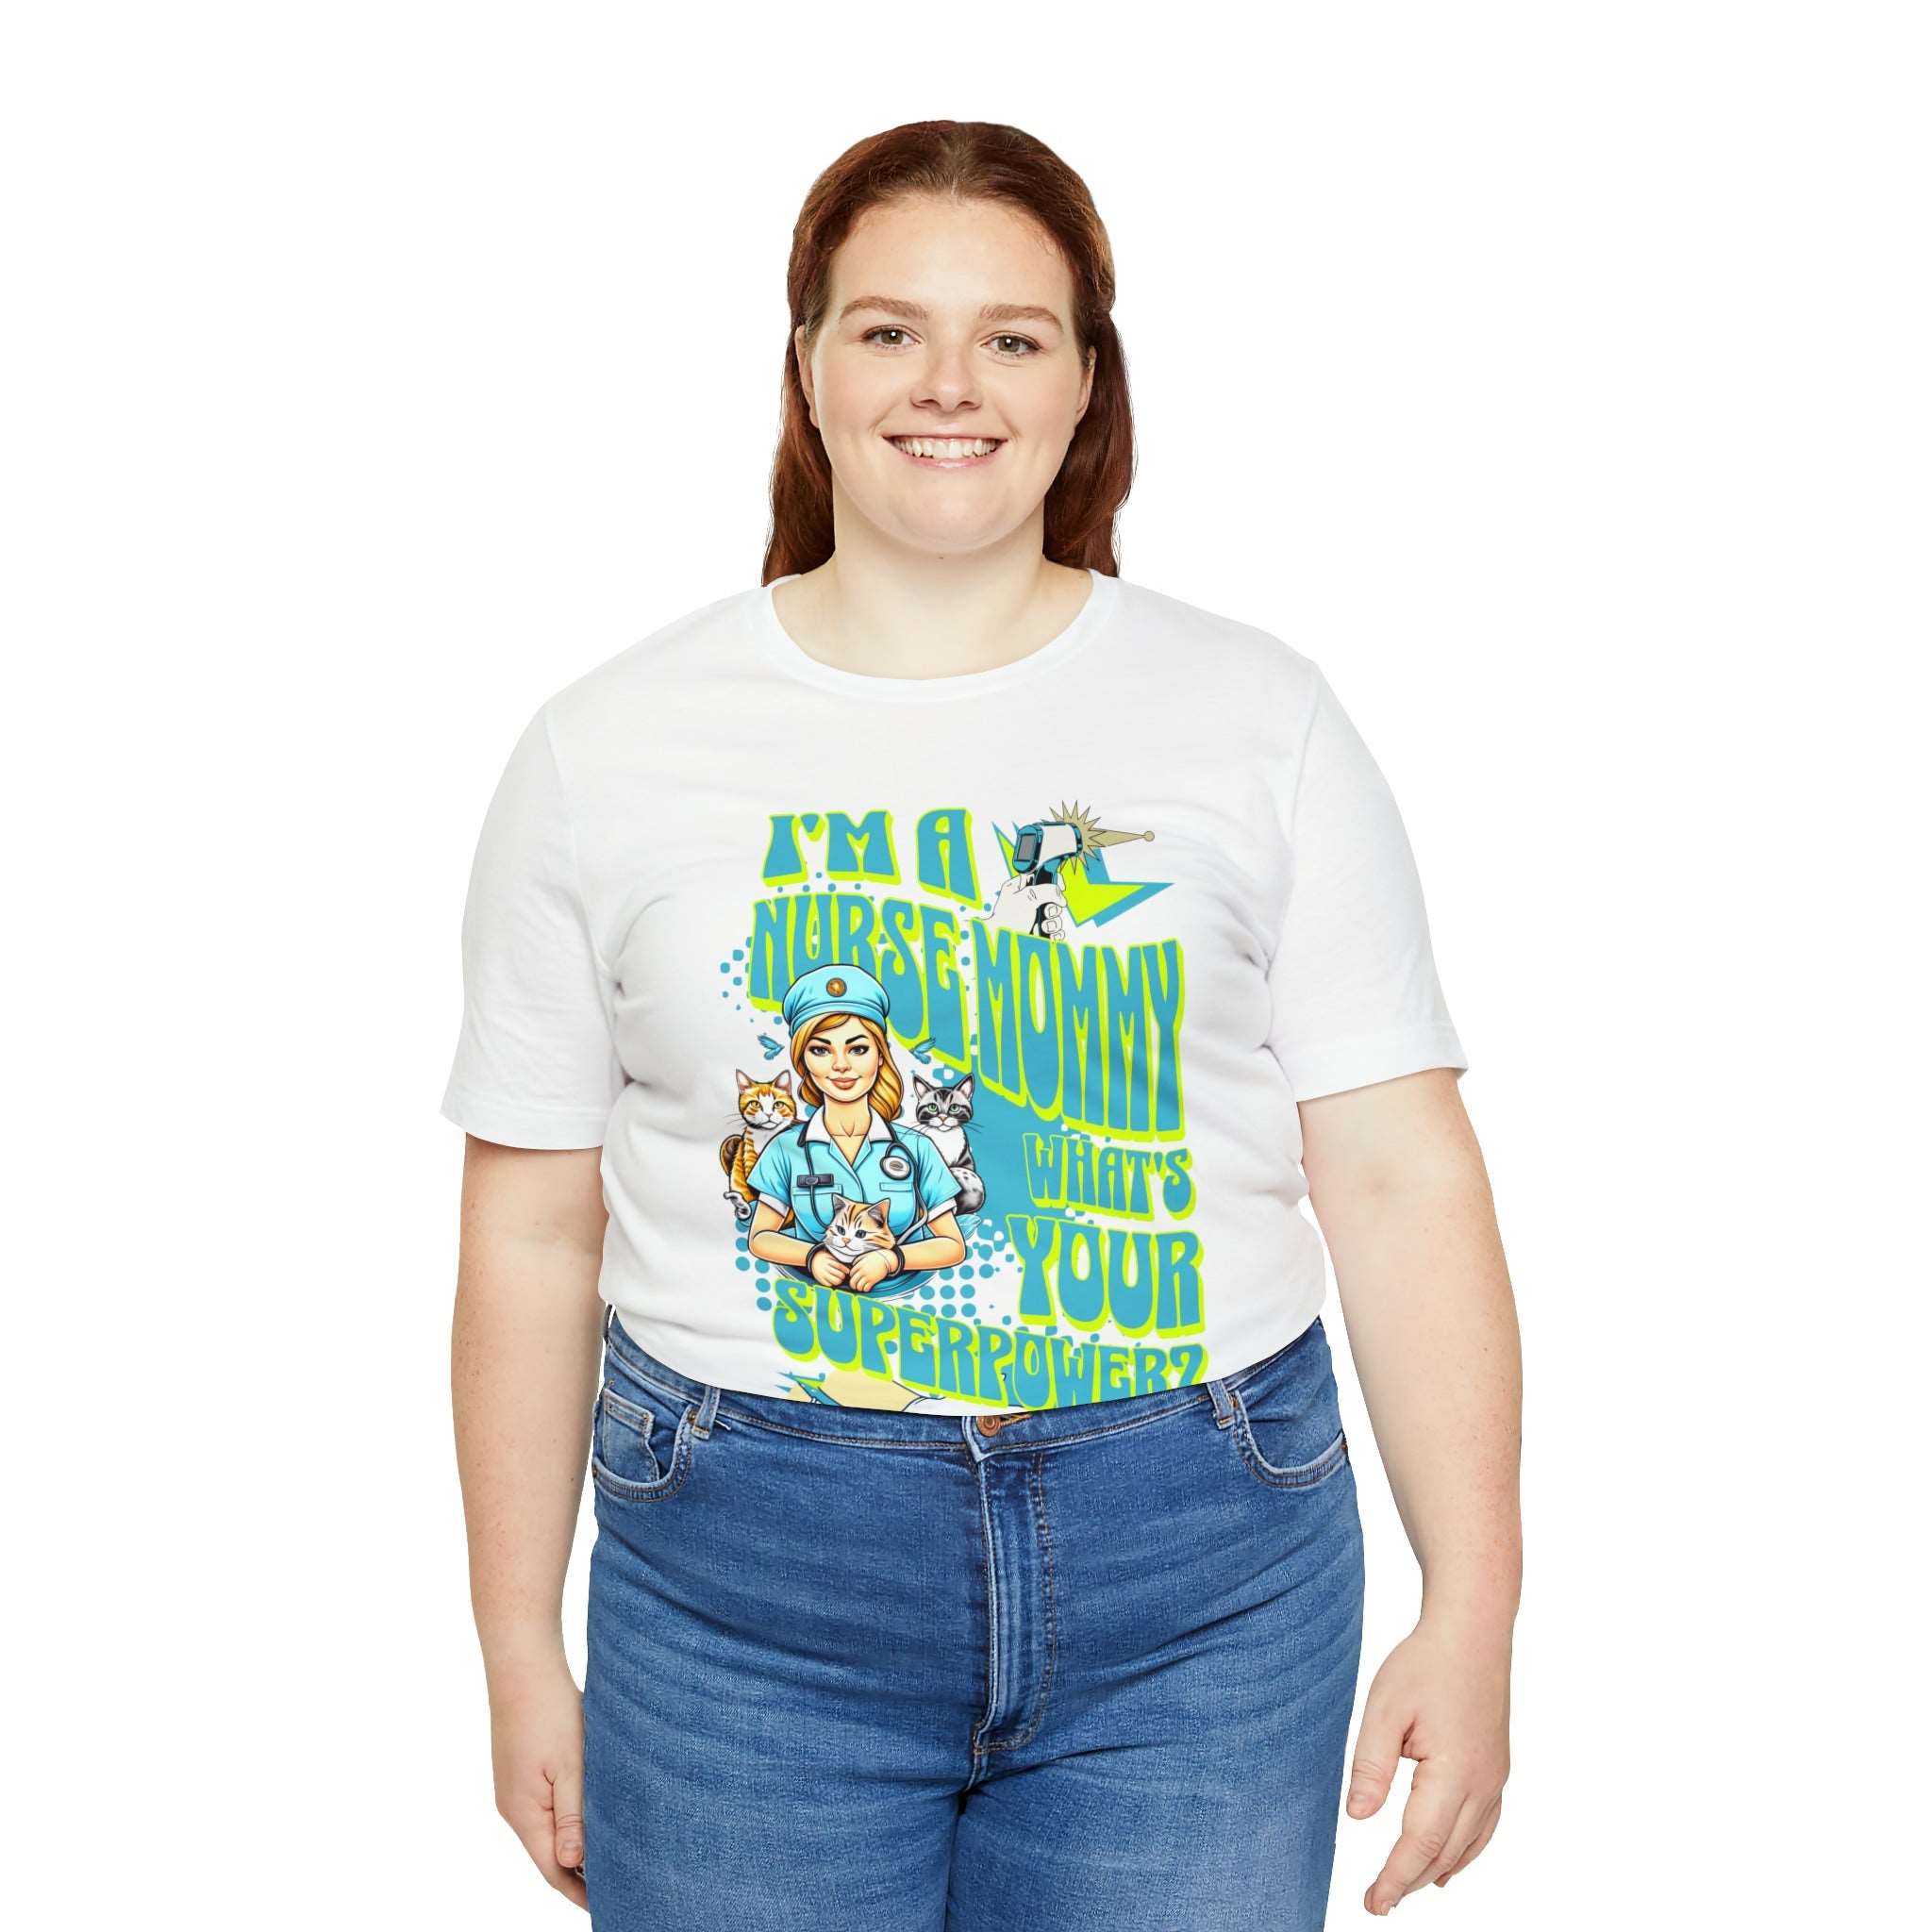 I Am A Mommy and A Nurse Funny T-shirt - RN Nurse Gift - MTL Dynamic StylesT-Shirt